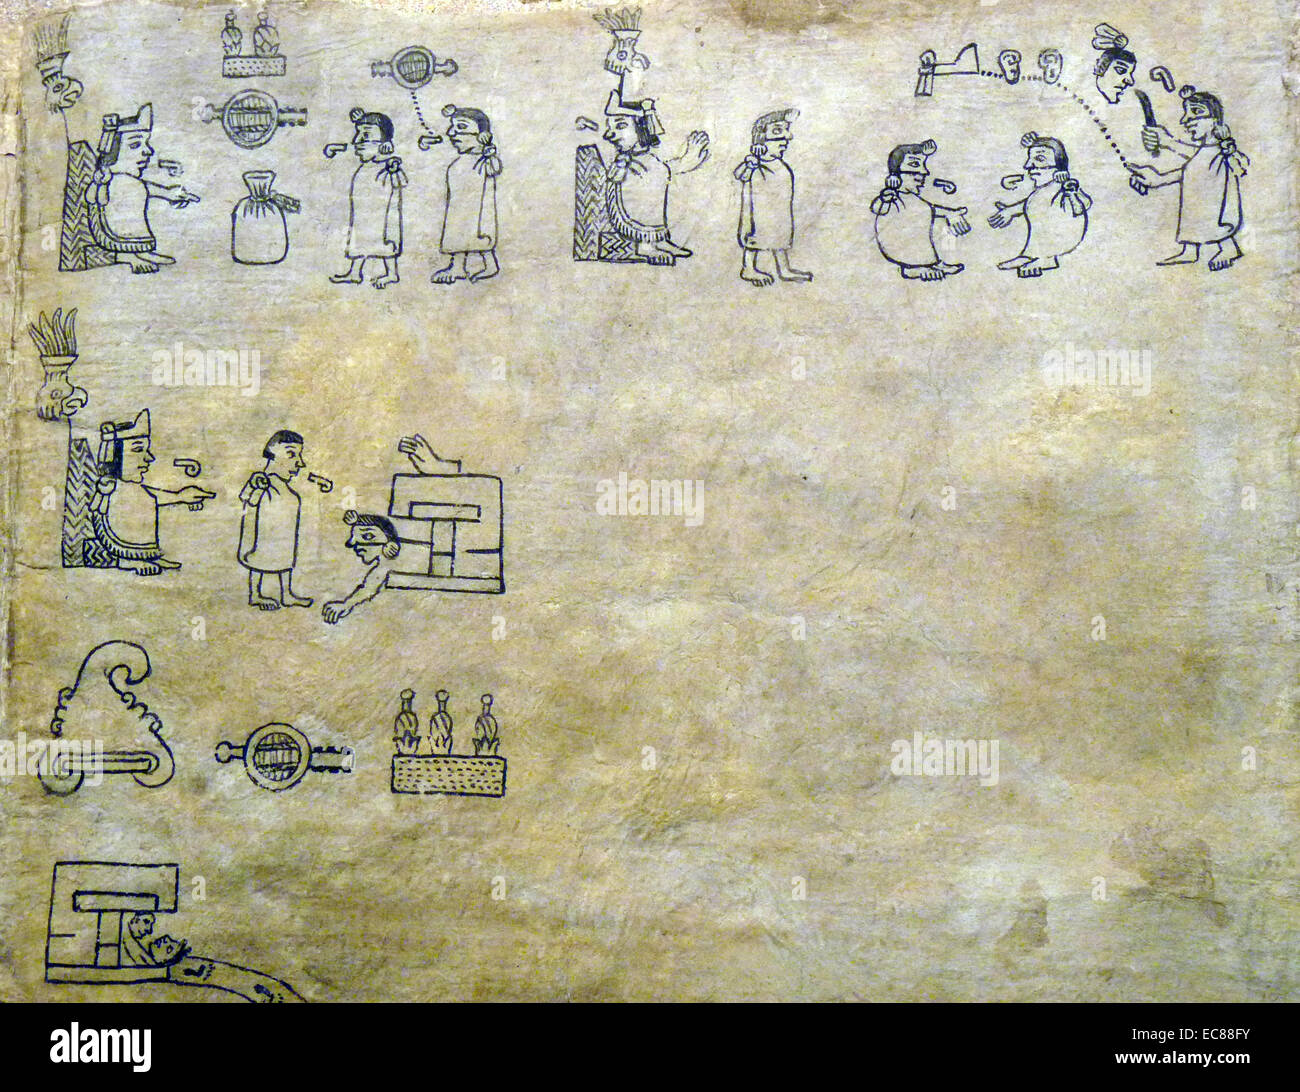 Il Codex Boturini dipinta da un ignoto autore azteca qualche tempo tra il 1530 e il 1541, circa un decennio dopo la conquista spagnola del Messico. Pittorica in natura, che racconta la storia del leggendario viaggio azteca da Aztlán a valle del Messico. Datata XVI Secolo Foto Stock